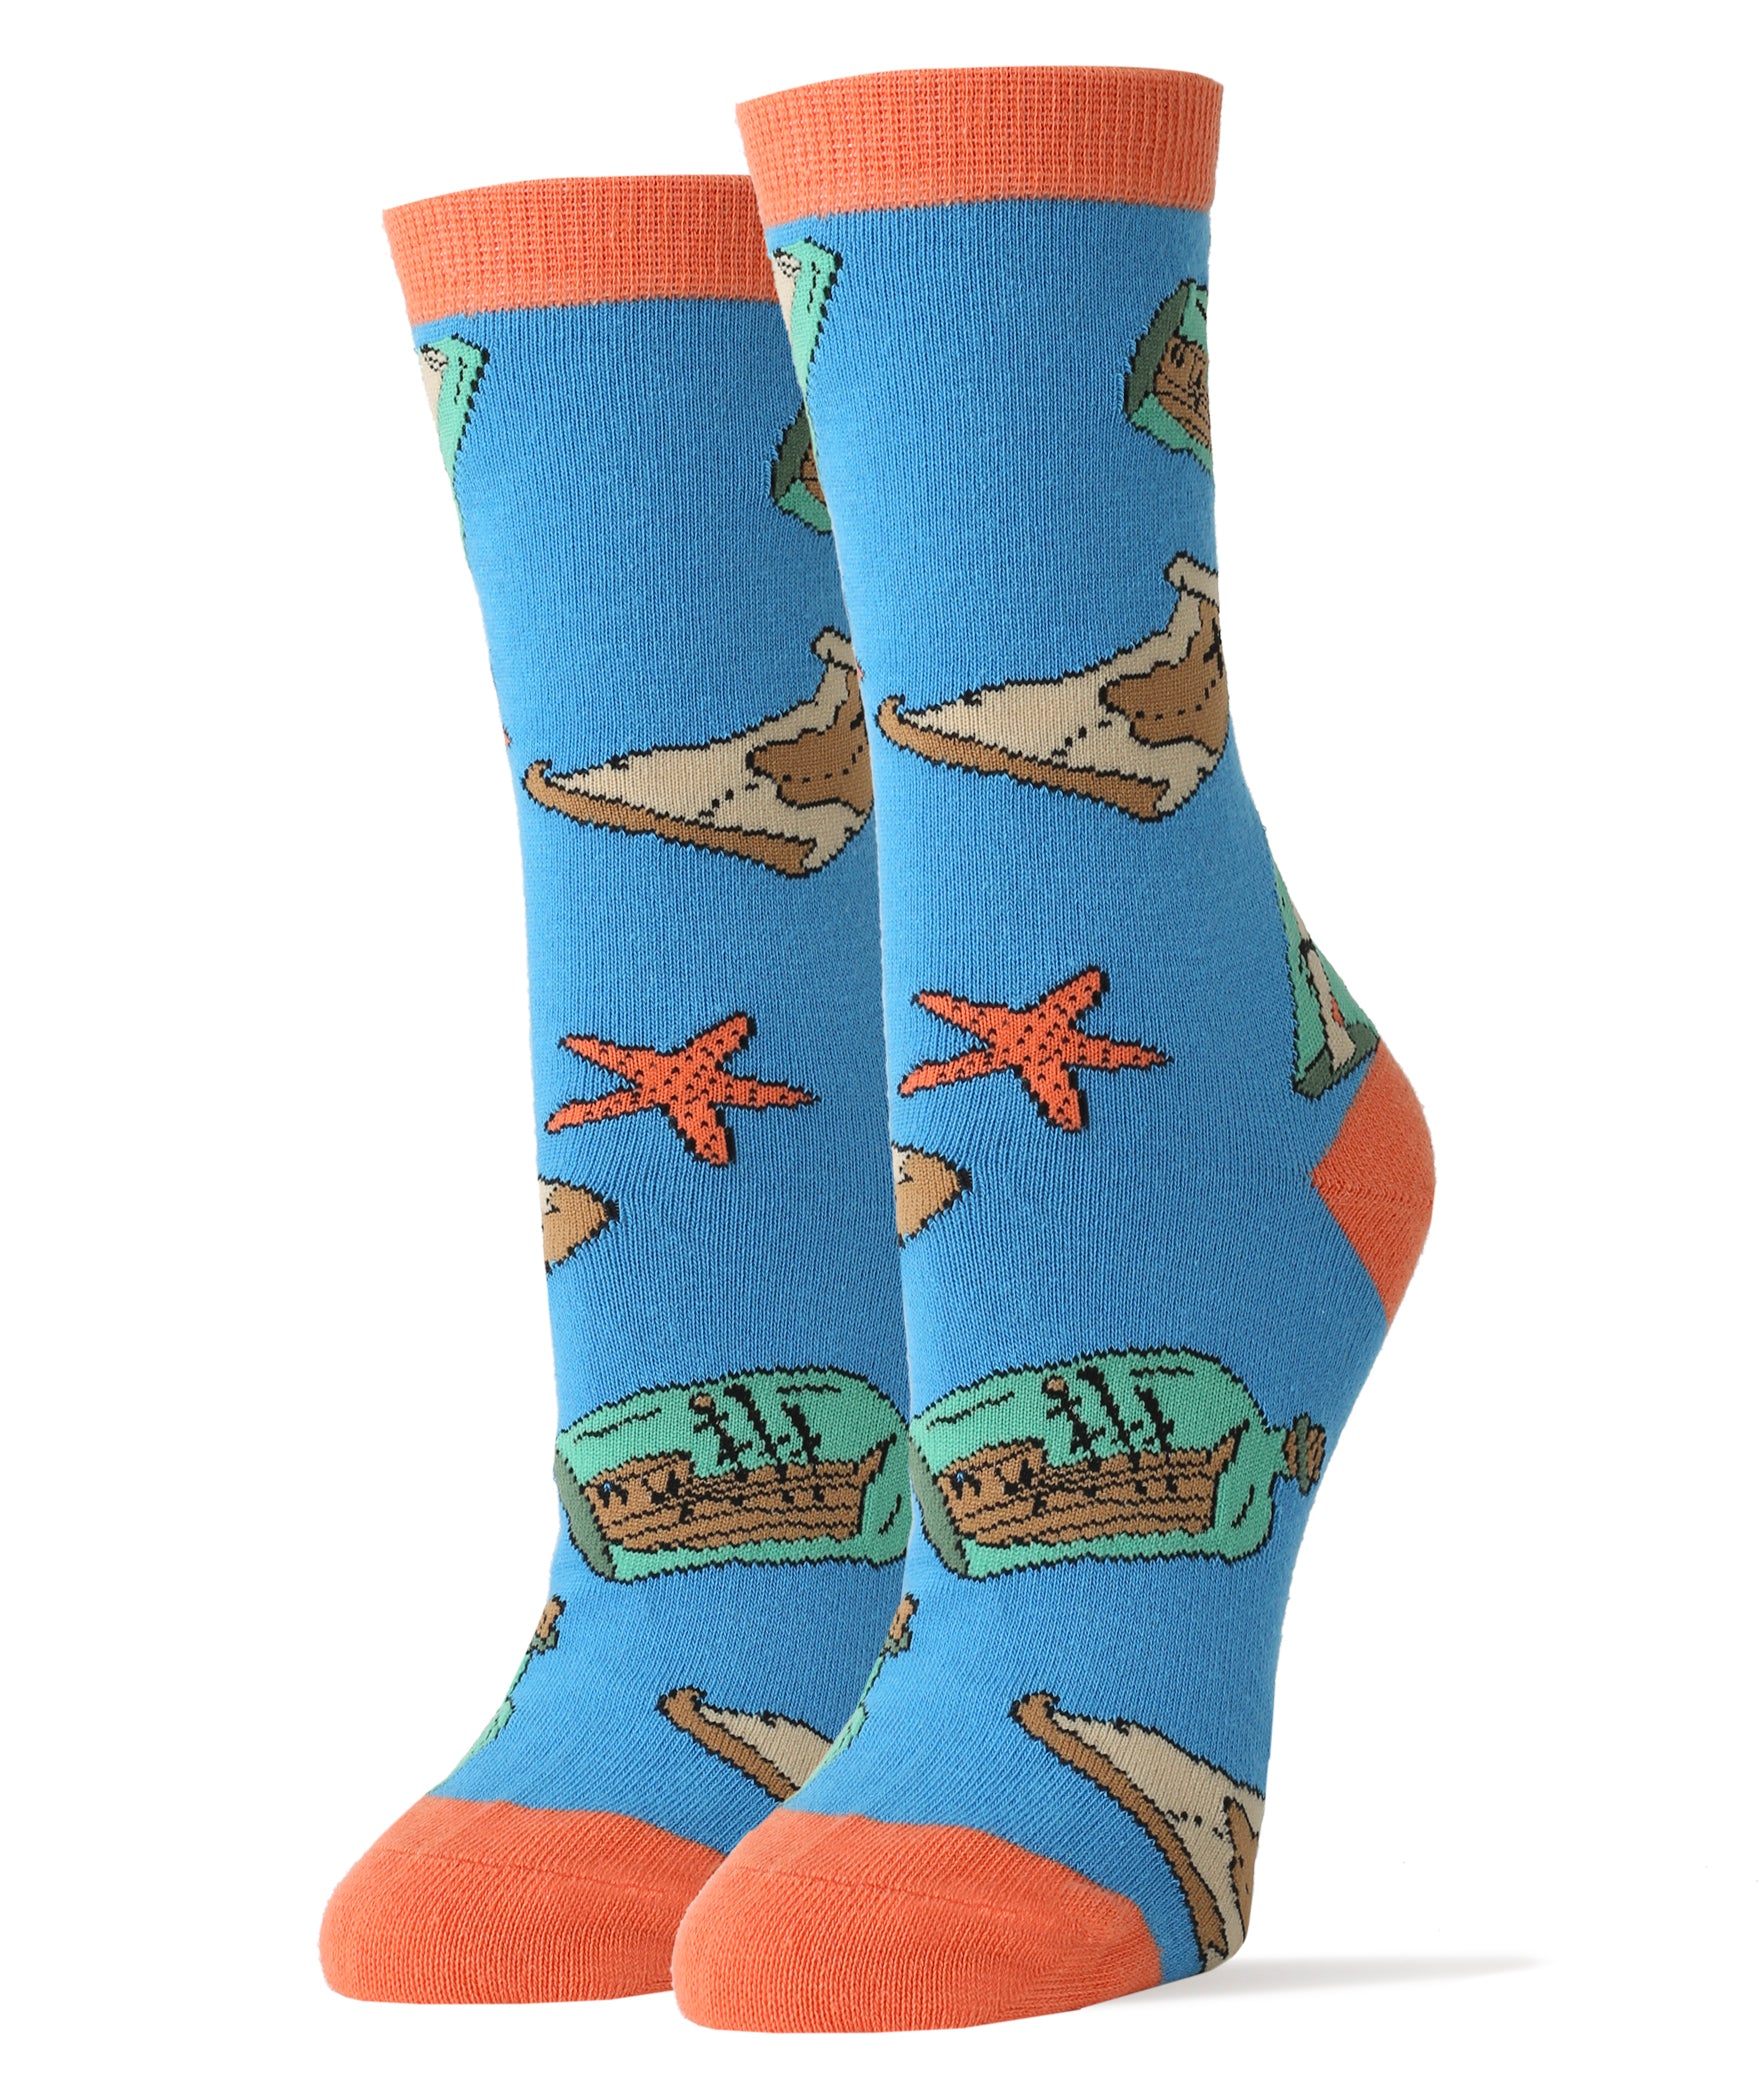 ThisWear Ocean Gifts Ship Socks for Women & Men Giant Squid Socks Kraken  Gifts 12-Pairs Novelty Crew Socks 